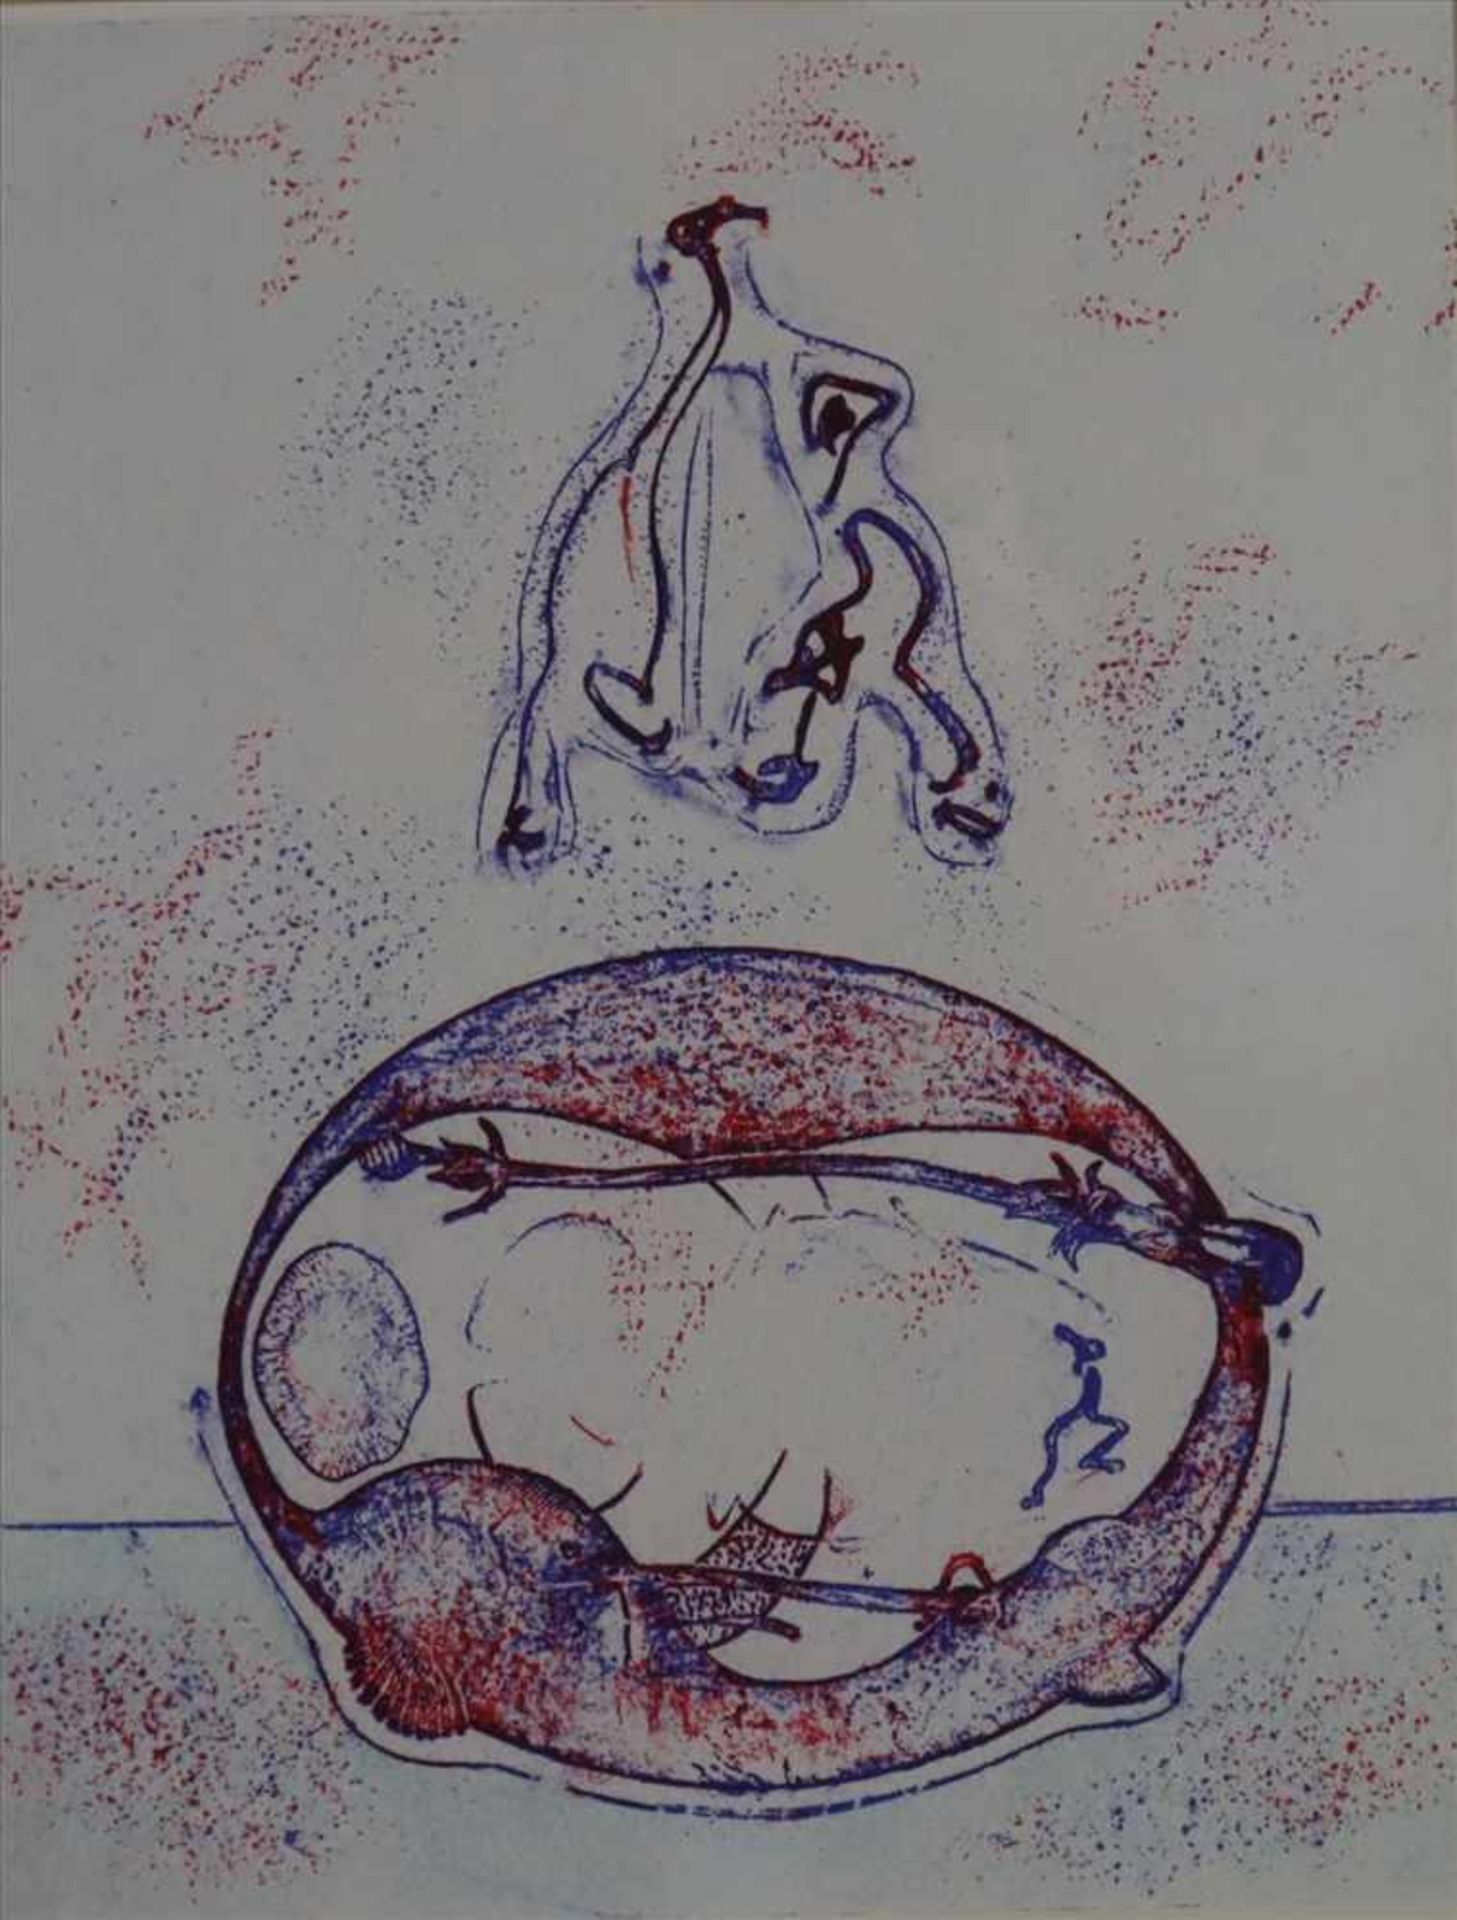 Ernst, Max (1891-1976) - "Aprés moi XX-éme Siecle", 1971, Lithographie, aus dem Buch "Hommage à